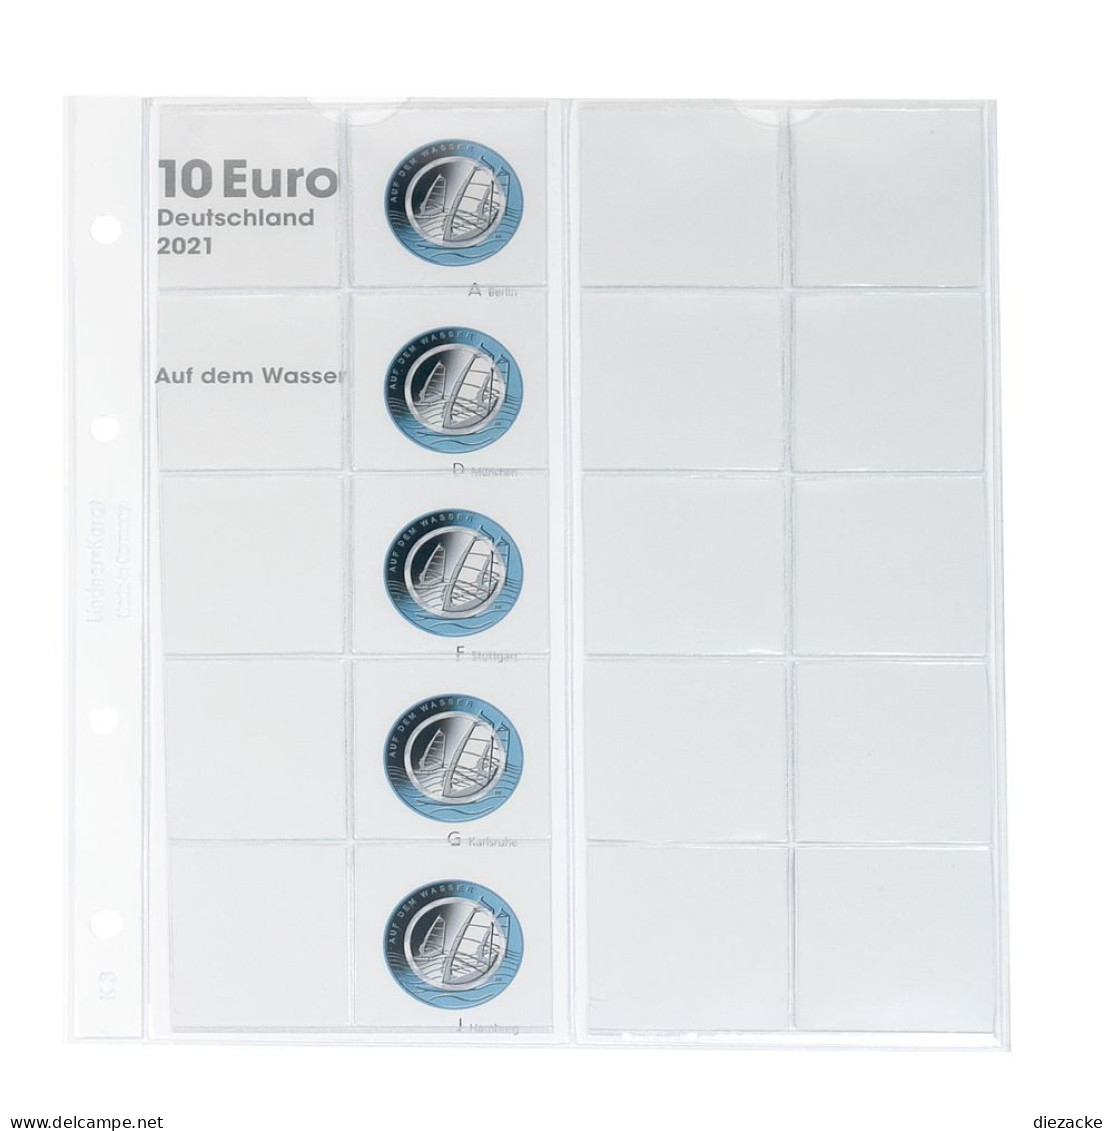 Lindner Vordruckblatt Karat Für 10 Euro-Münzen Polymerring 1110-3 Neu - Materiale